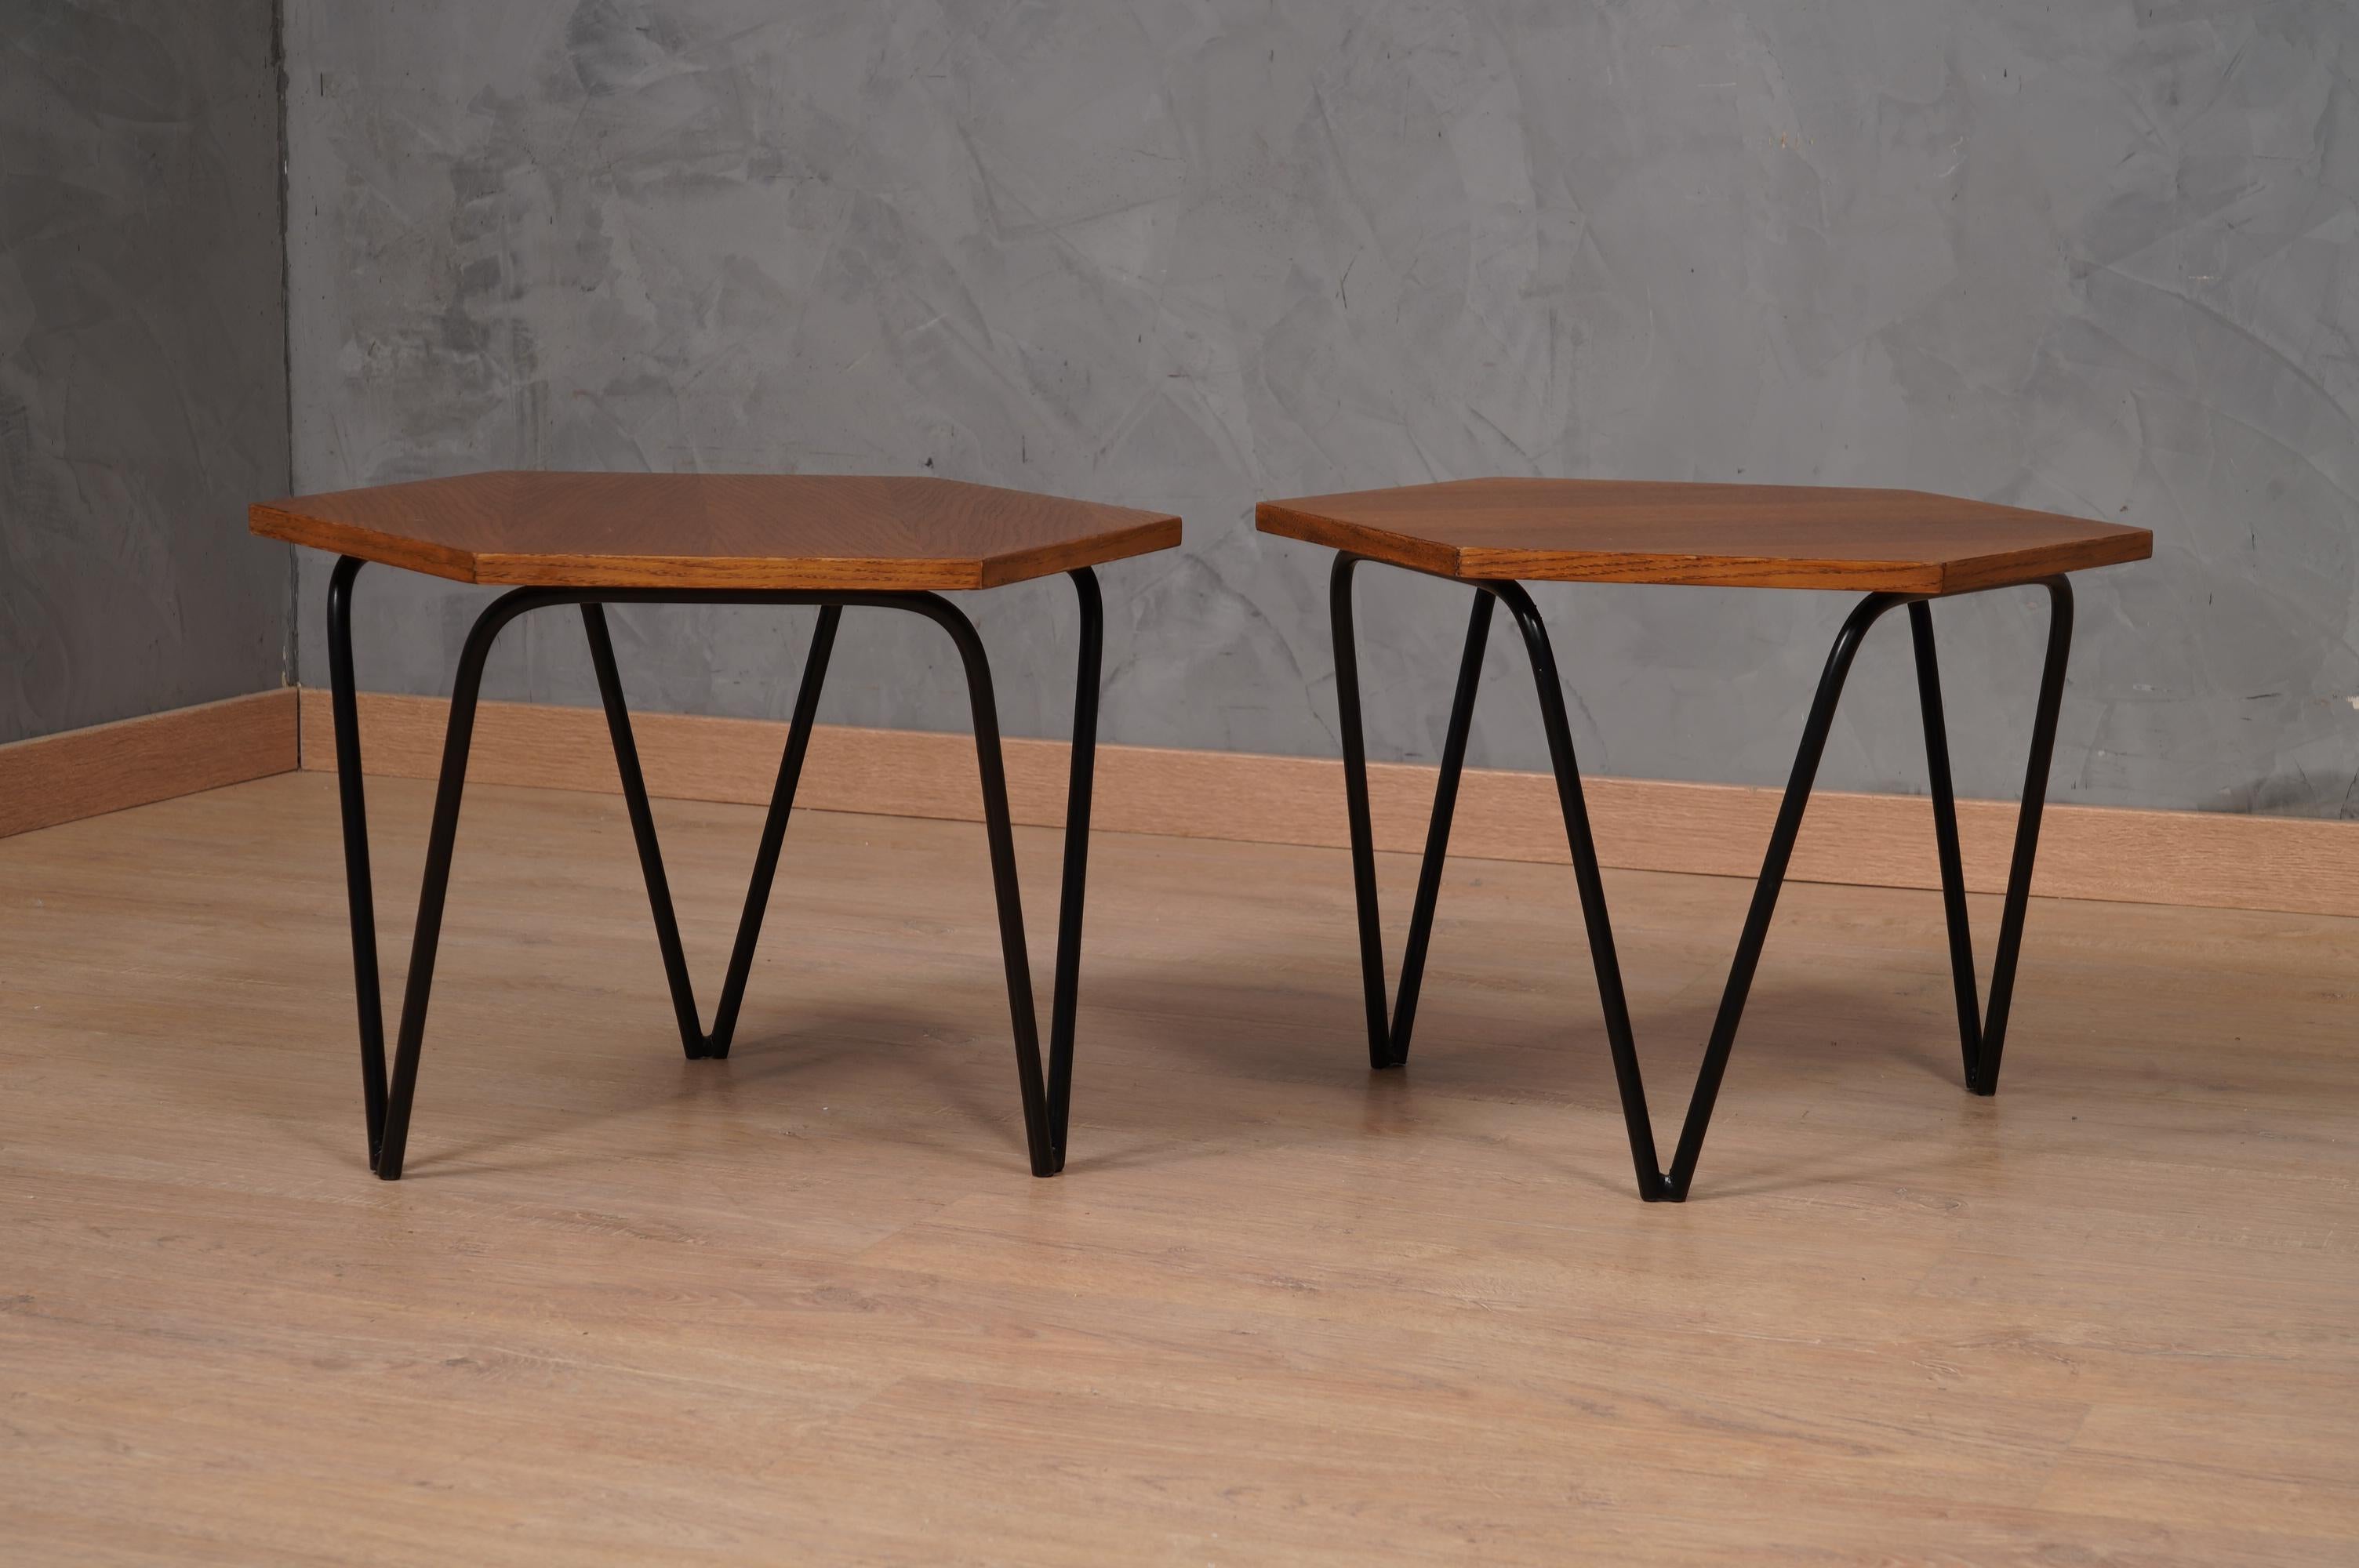 Magnifique paire de tables d'appoint hexagonales de Gio Ponti fabriquée par ISA. Des classiques linéaires élégants, et ainsi de suite, des pièces de mobilier uniques. Icones du design italien, ils se distinguent par leur sens de la légèreté et de la